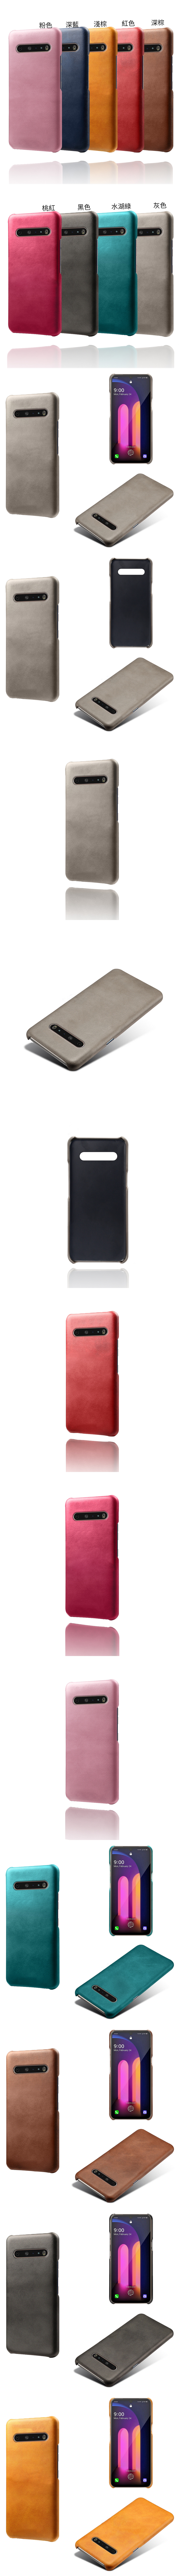 LG V60 ThinQ 皮革保護殼(PLAIN) - 牛皮仿真皮紋單色背蓋素色多色手機殼保護套手機套